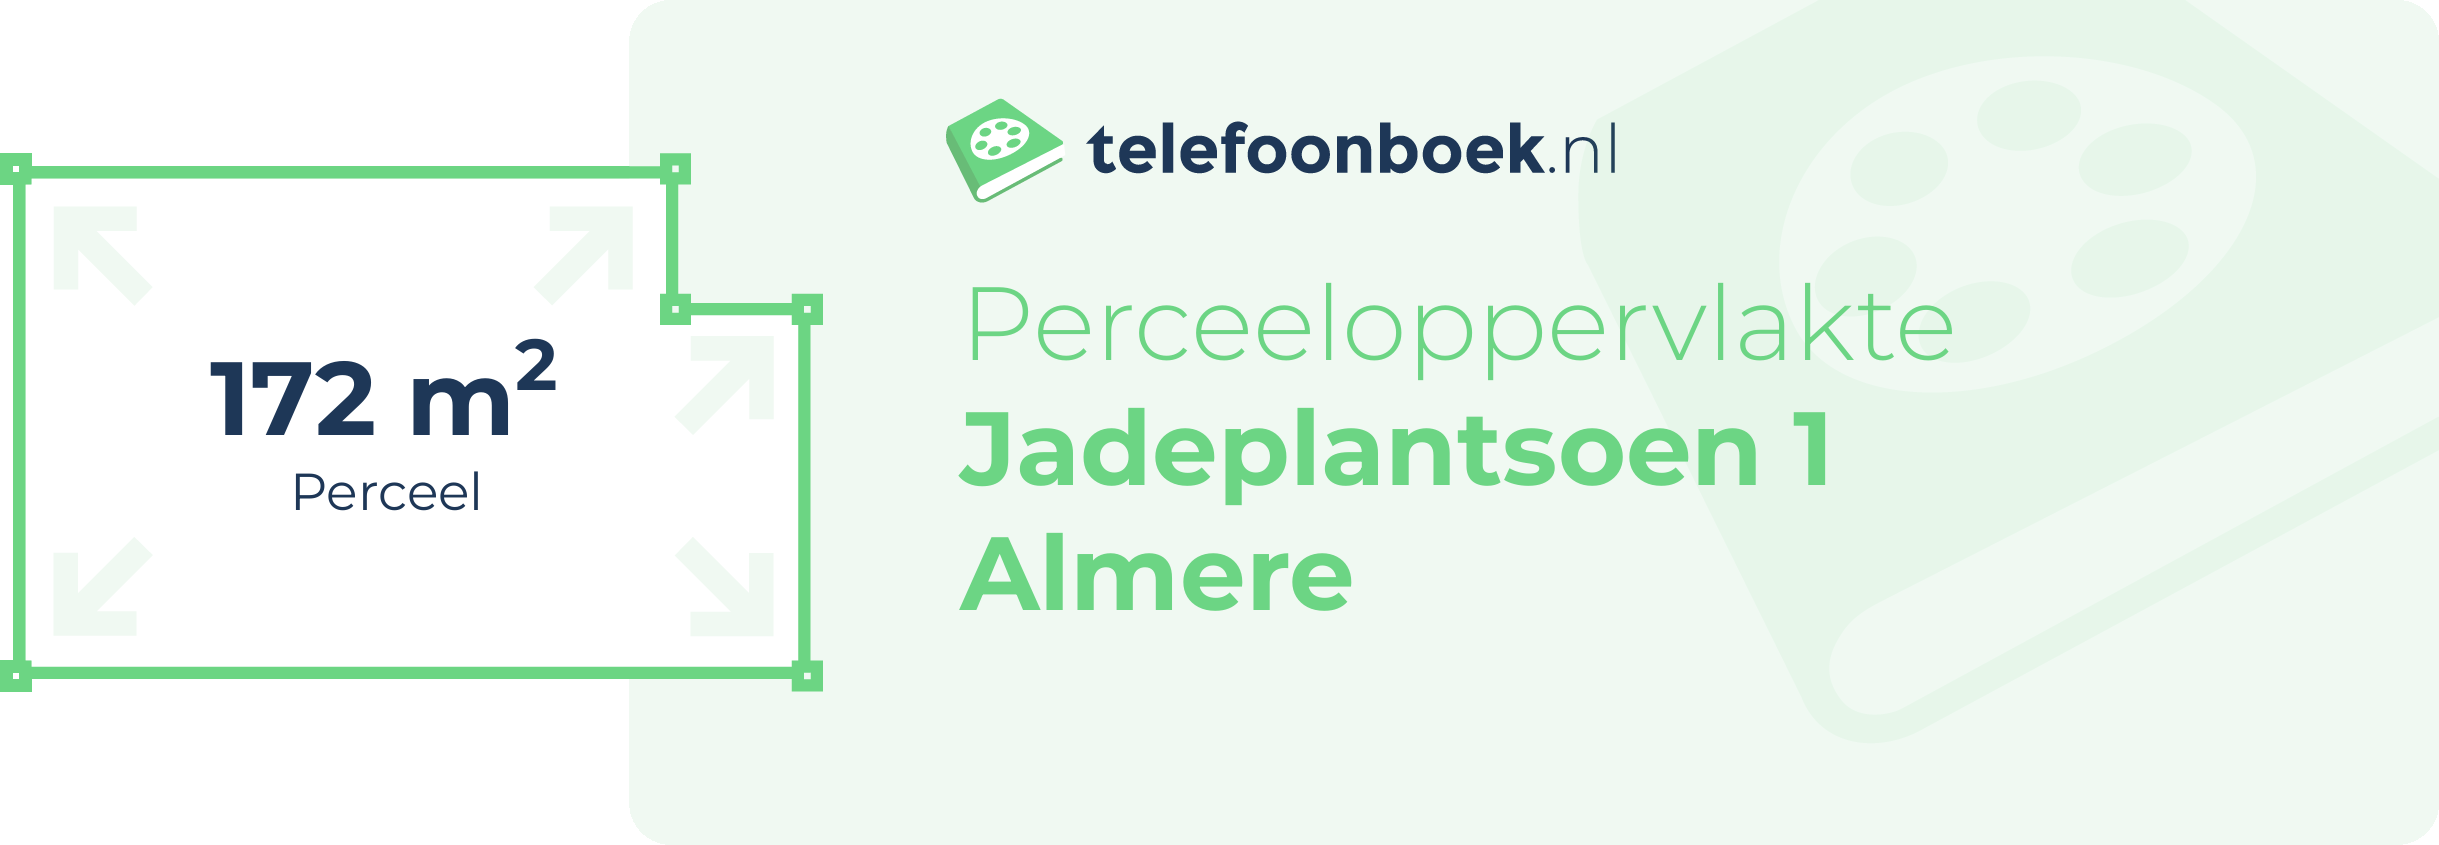 Perceeloppervlakte Jadeplantsoen 1 Almere